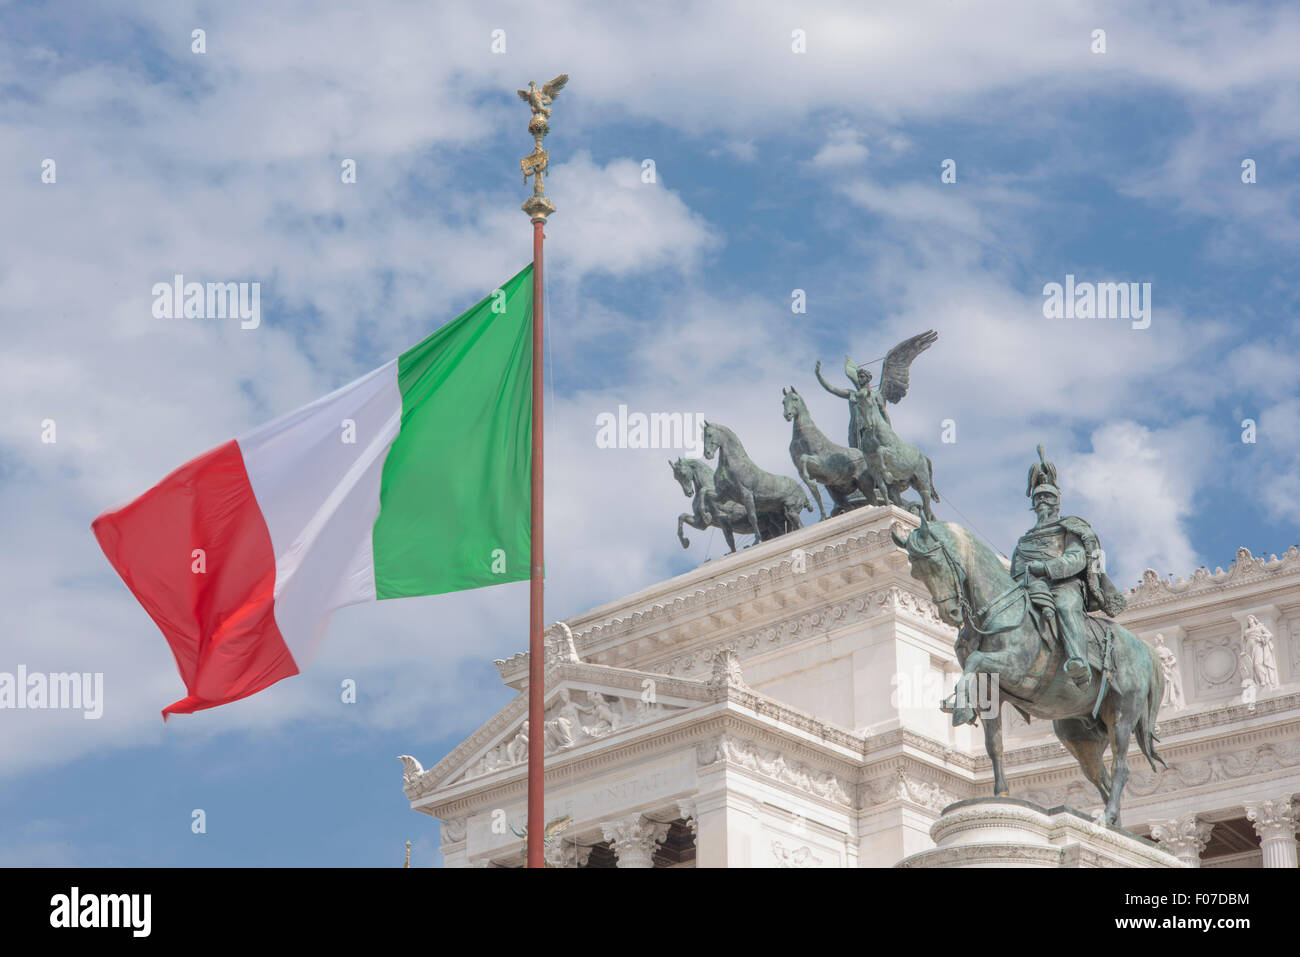 Monument Vittorio Emanuele, vue sur les statues de Vittorio Emanuele ii et victoire sur un quadriga situé dans le centre historique de Rome, Italie. Banque D'Images